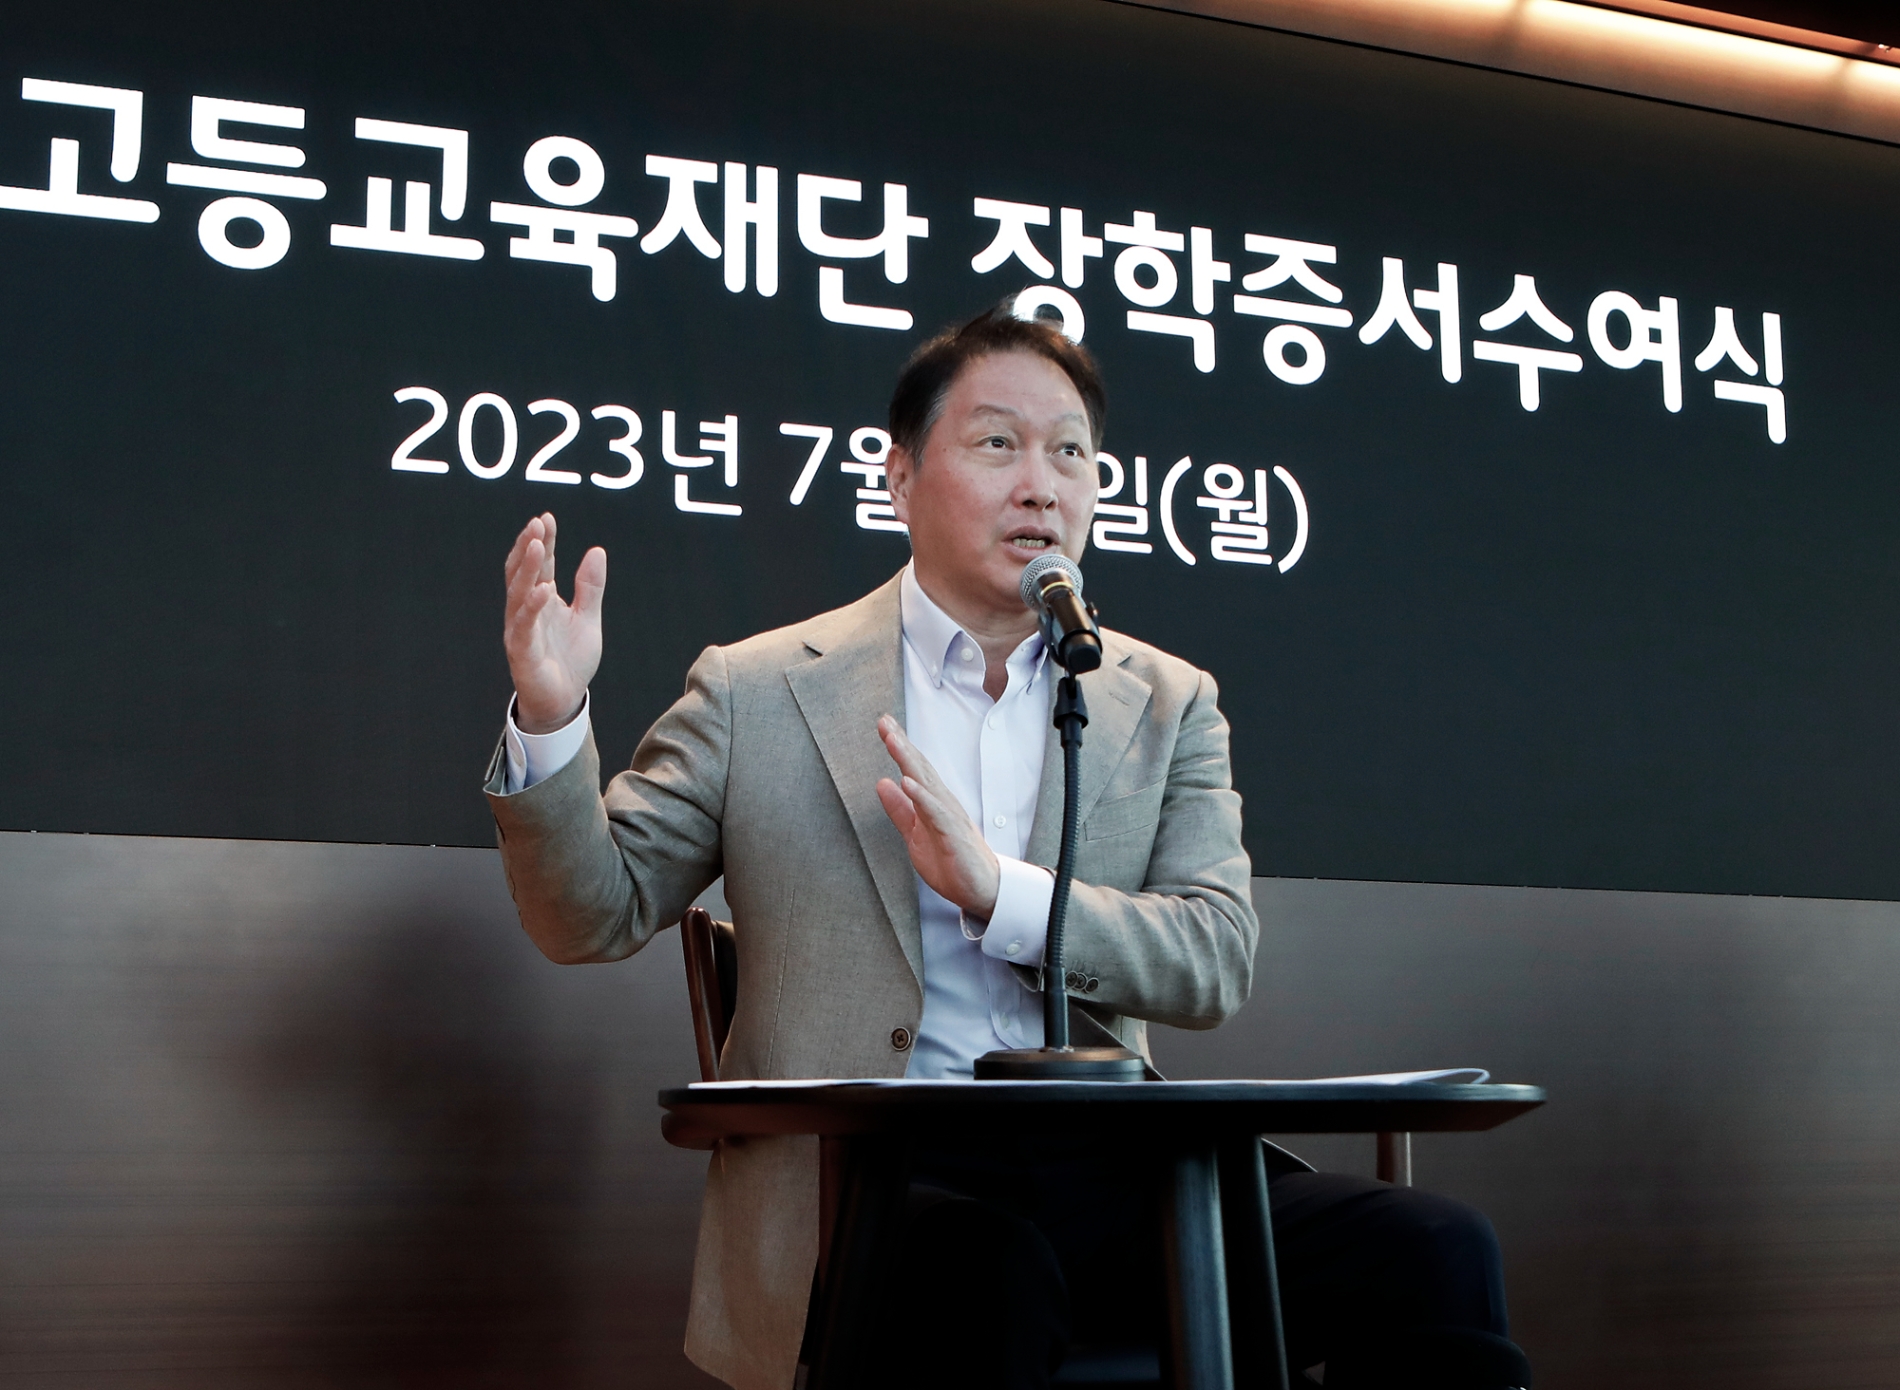 [산업 이슈] 최태원 SK회장 “한국이 글로벌 선도국가 되도록 앞장서야” 外